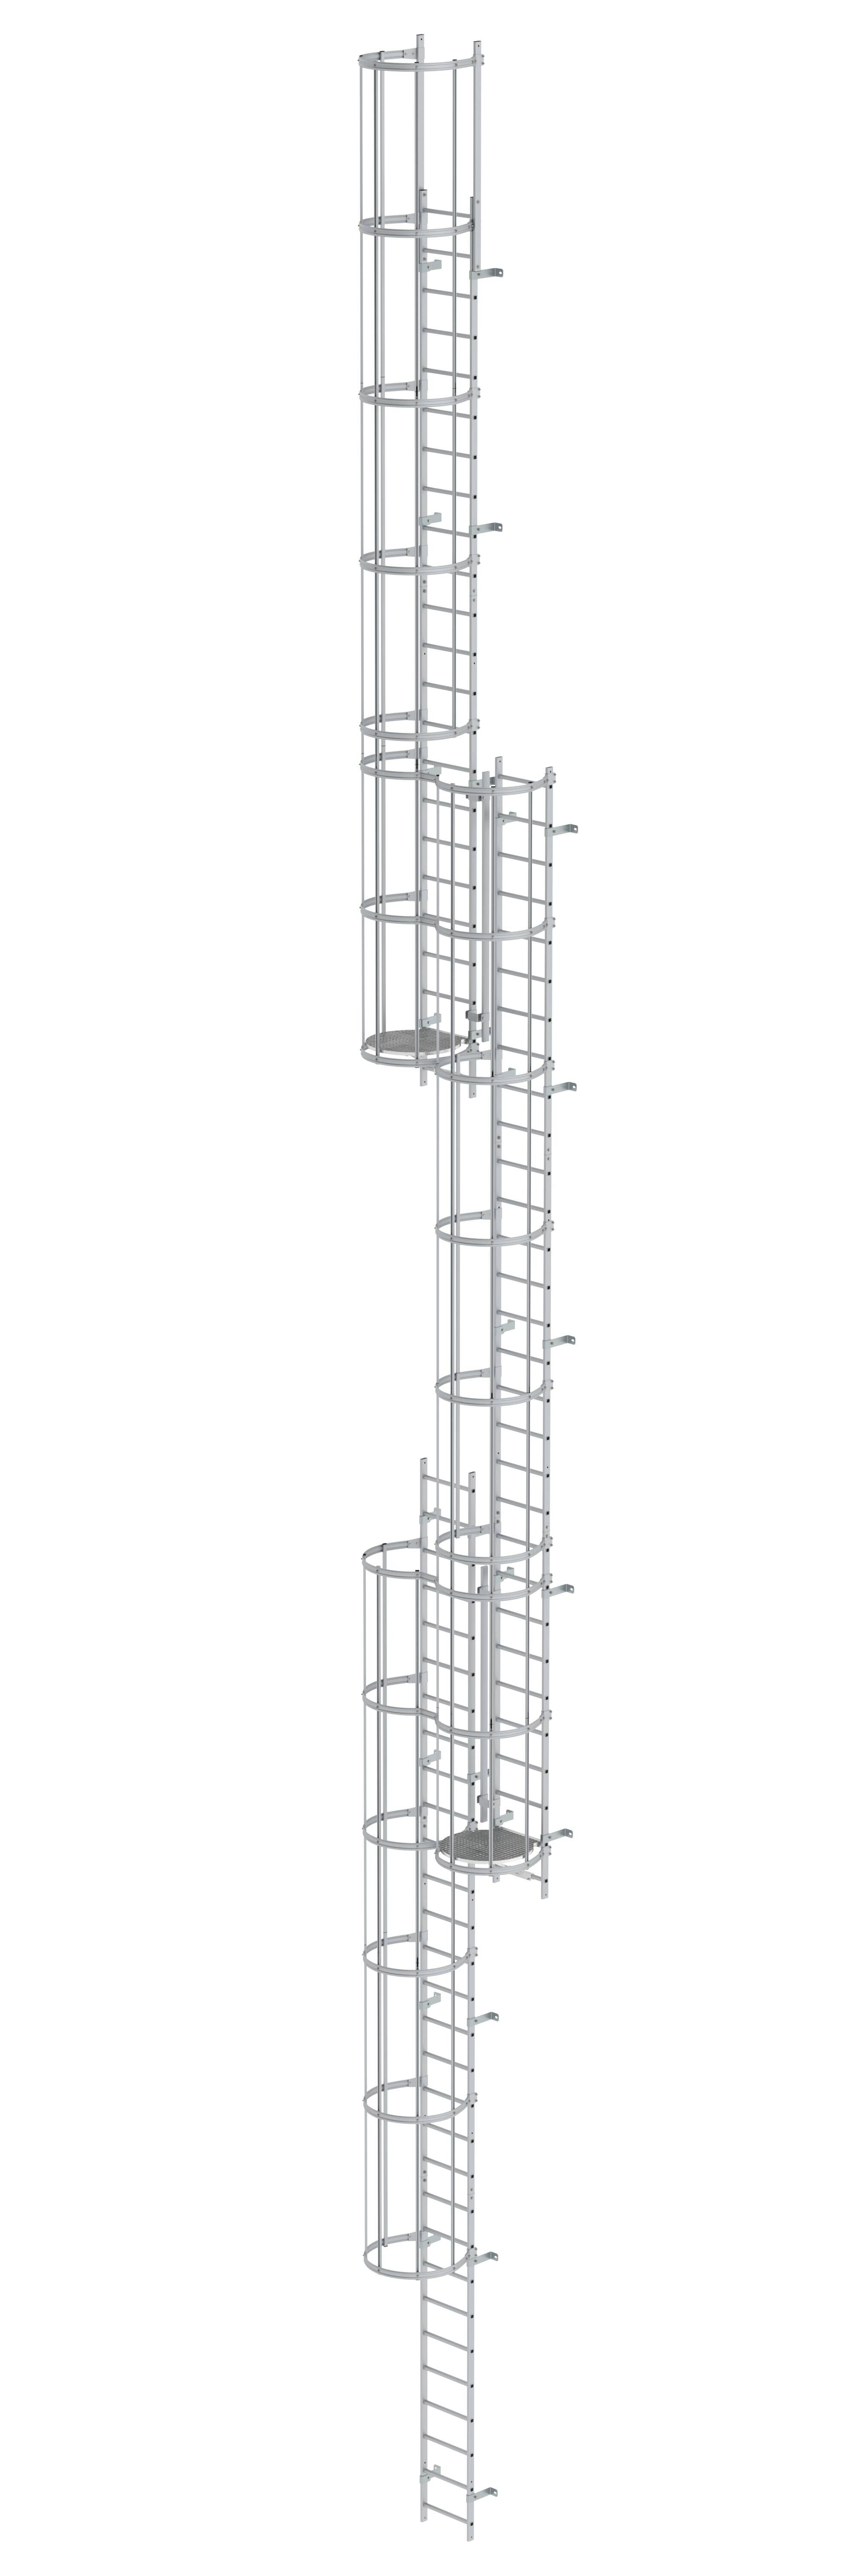 Mehrzügige Steigleiter mit Rückenschutz (Maschinen) Aluminium eloxiert 18,84m